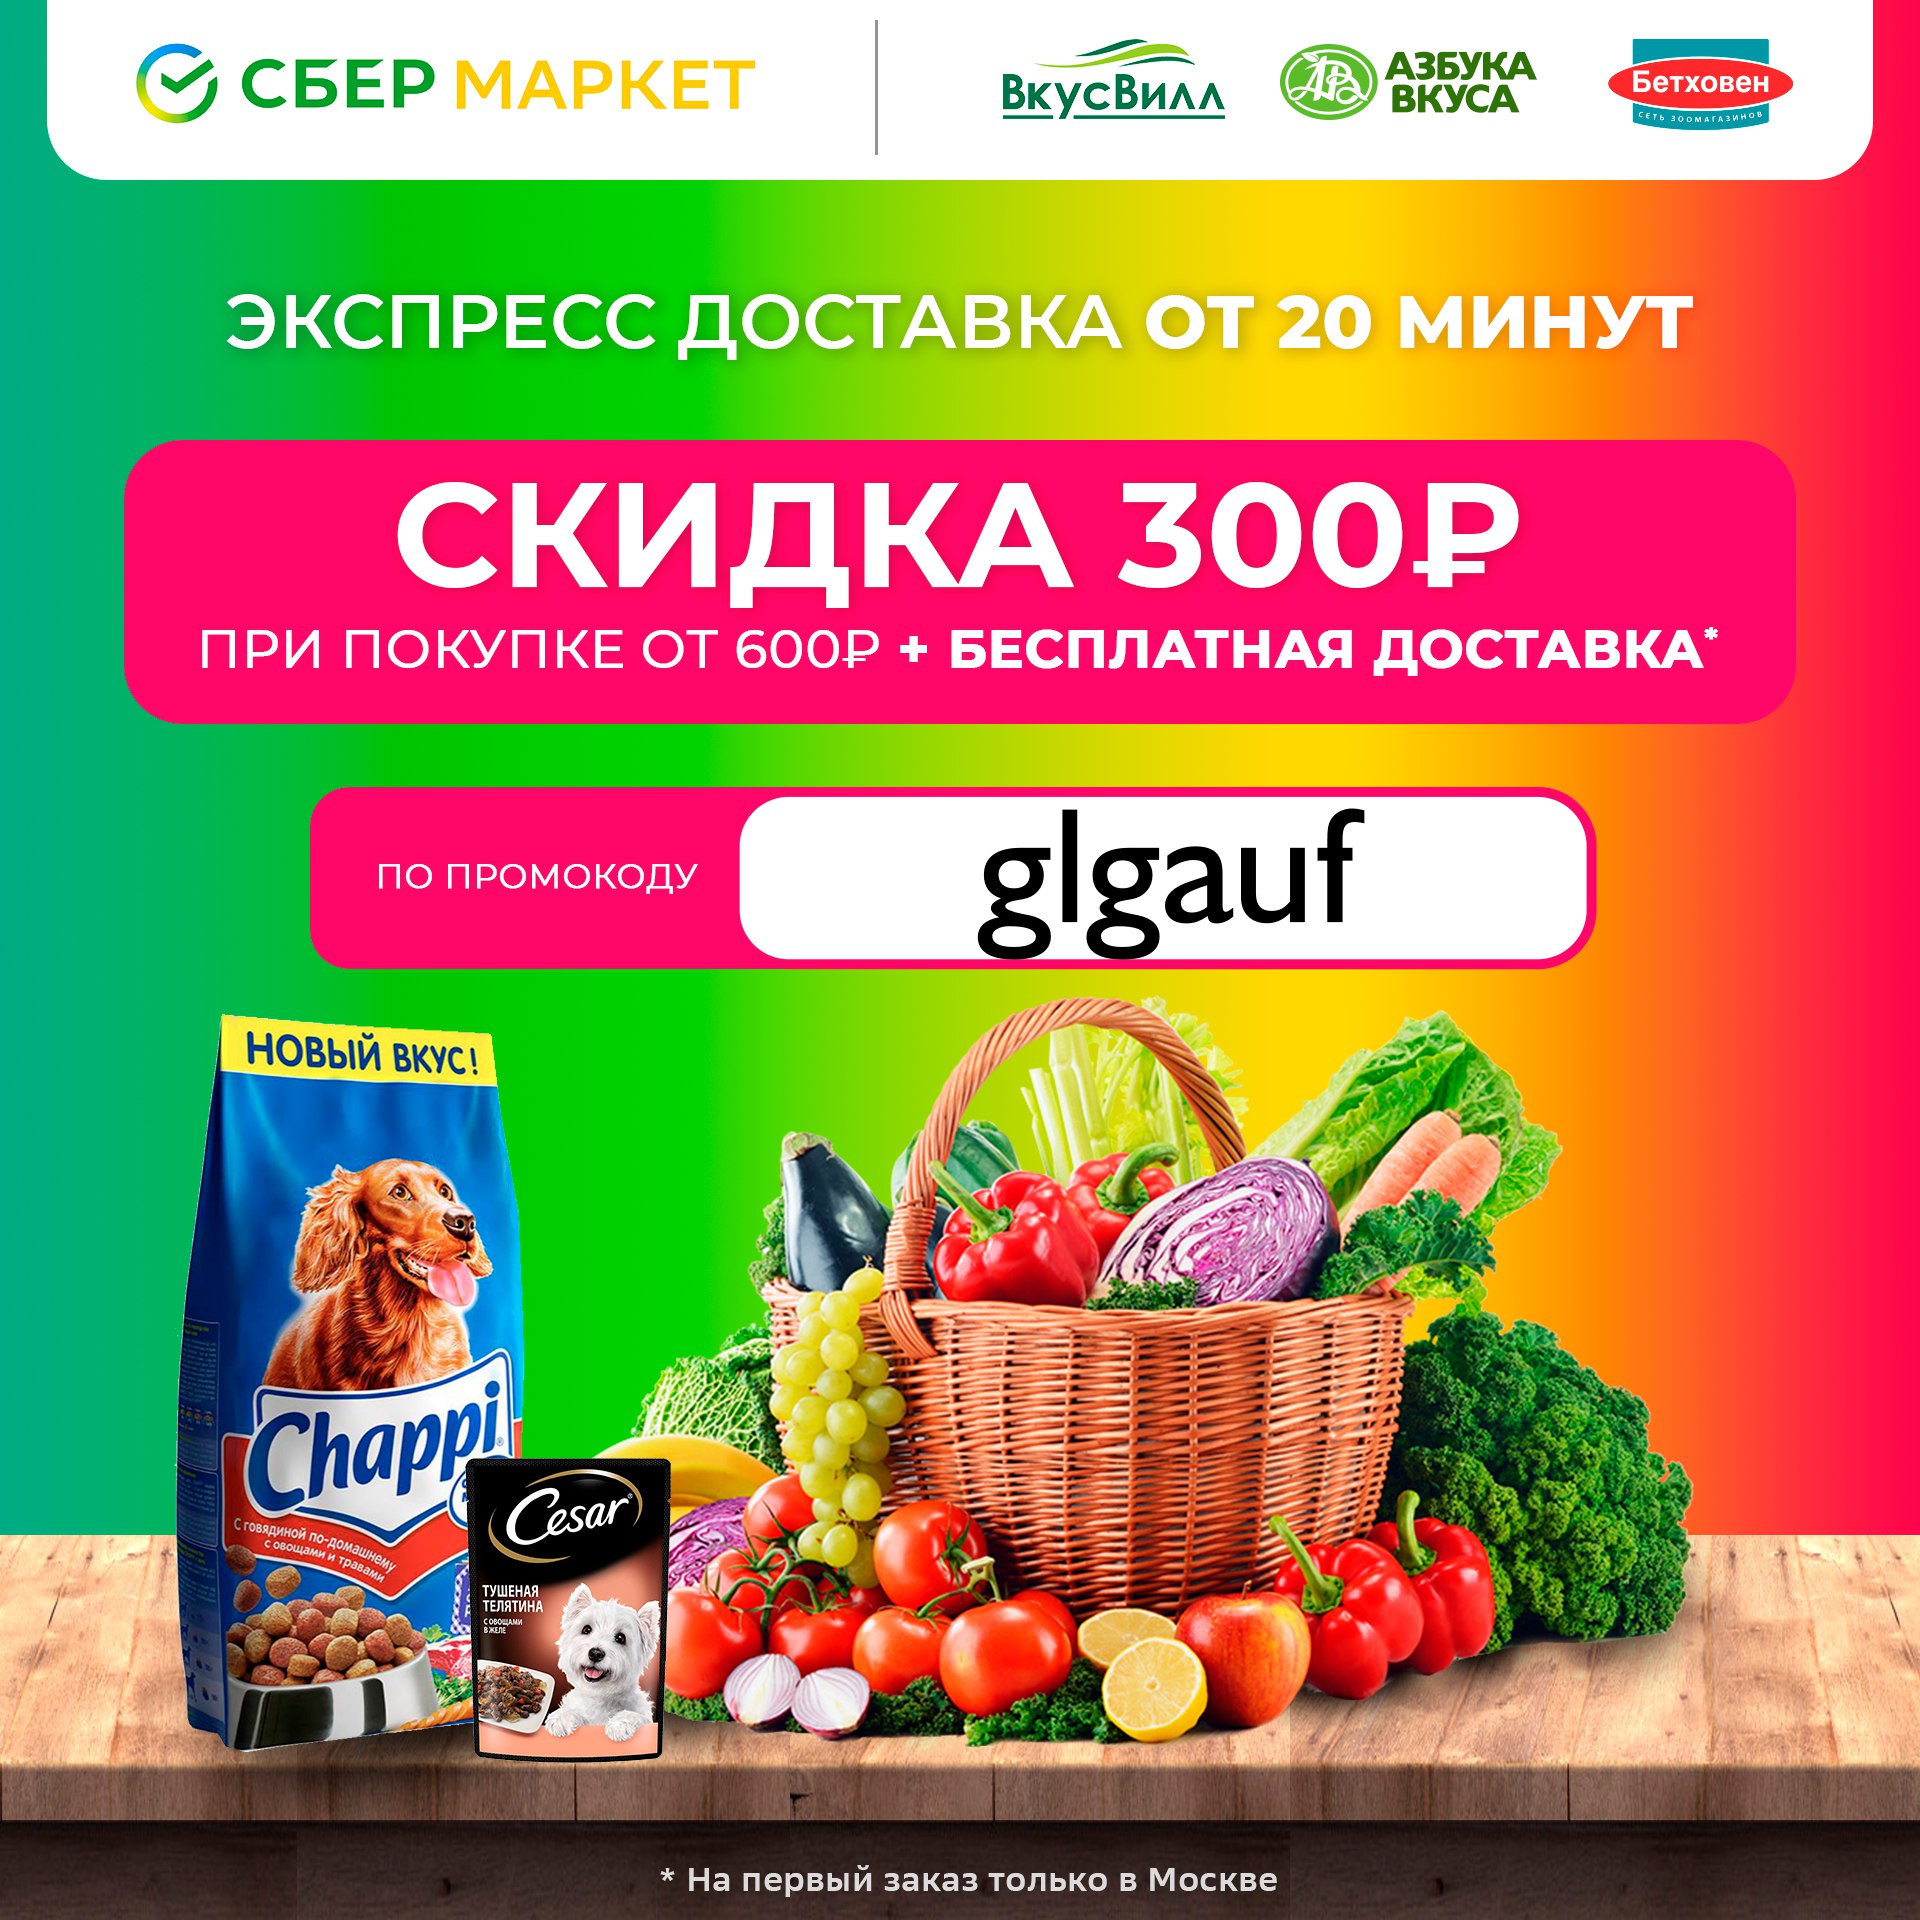 Сбермаркет 500 рублей